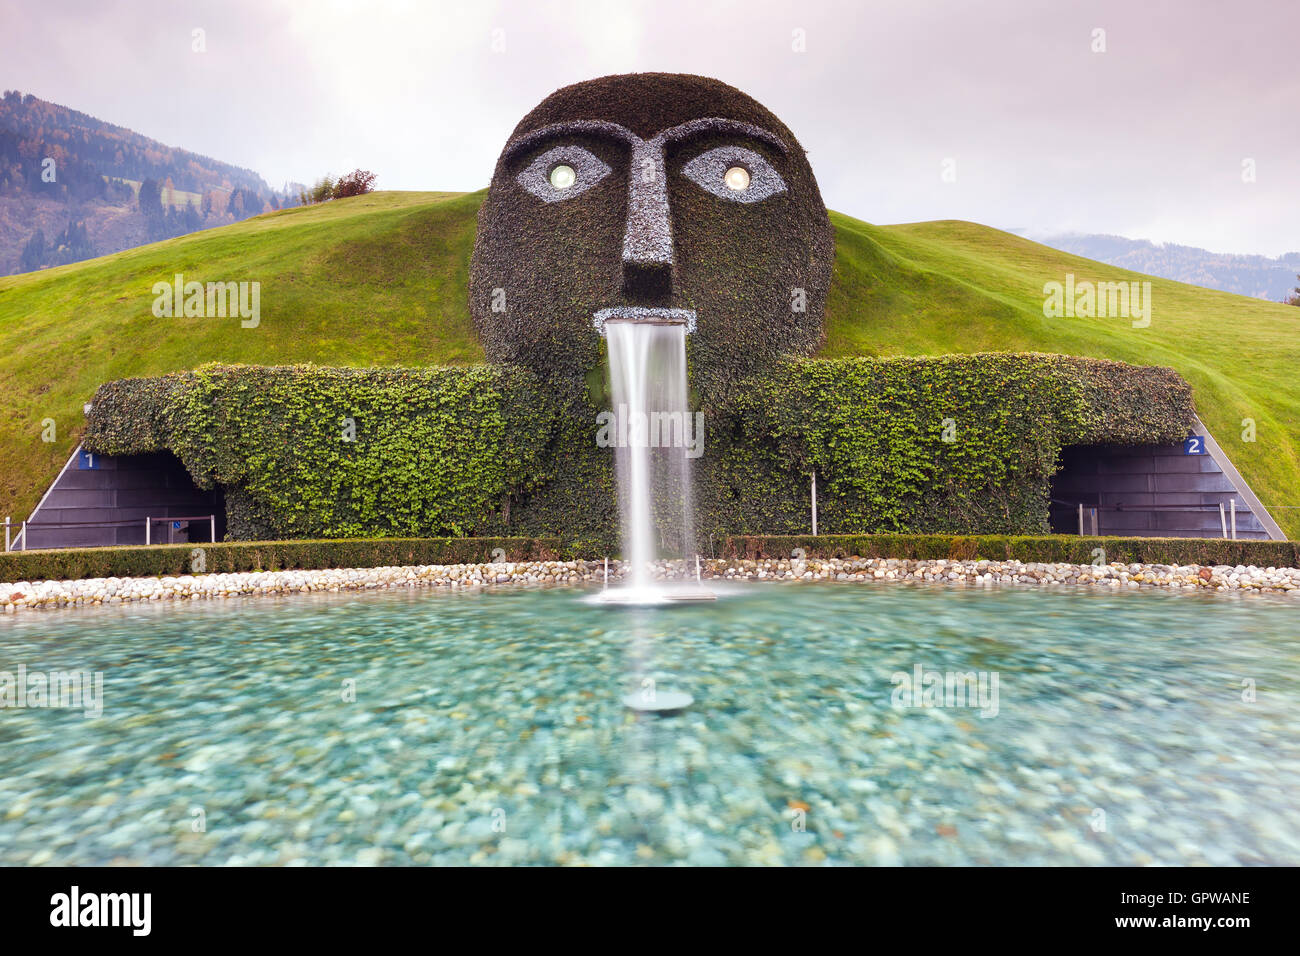 Entrance of Swarovski Museum in Innsbruck Stock Photo - Alamy